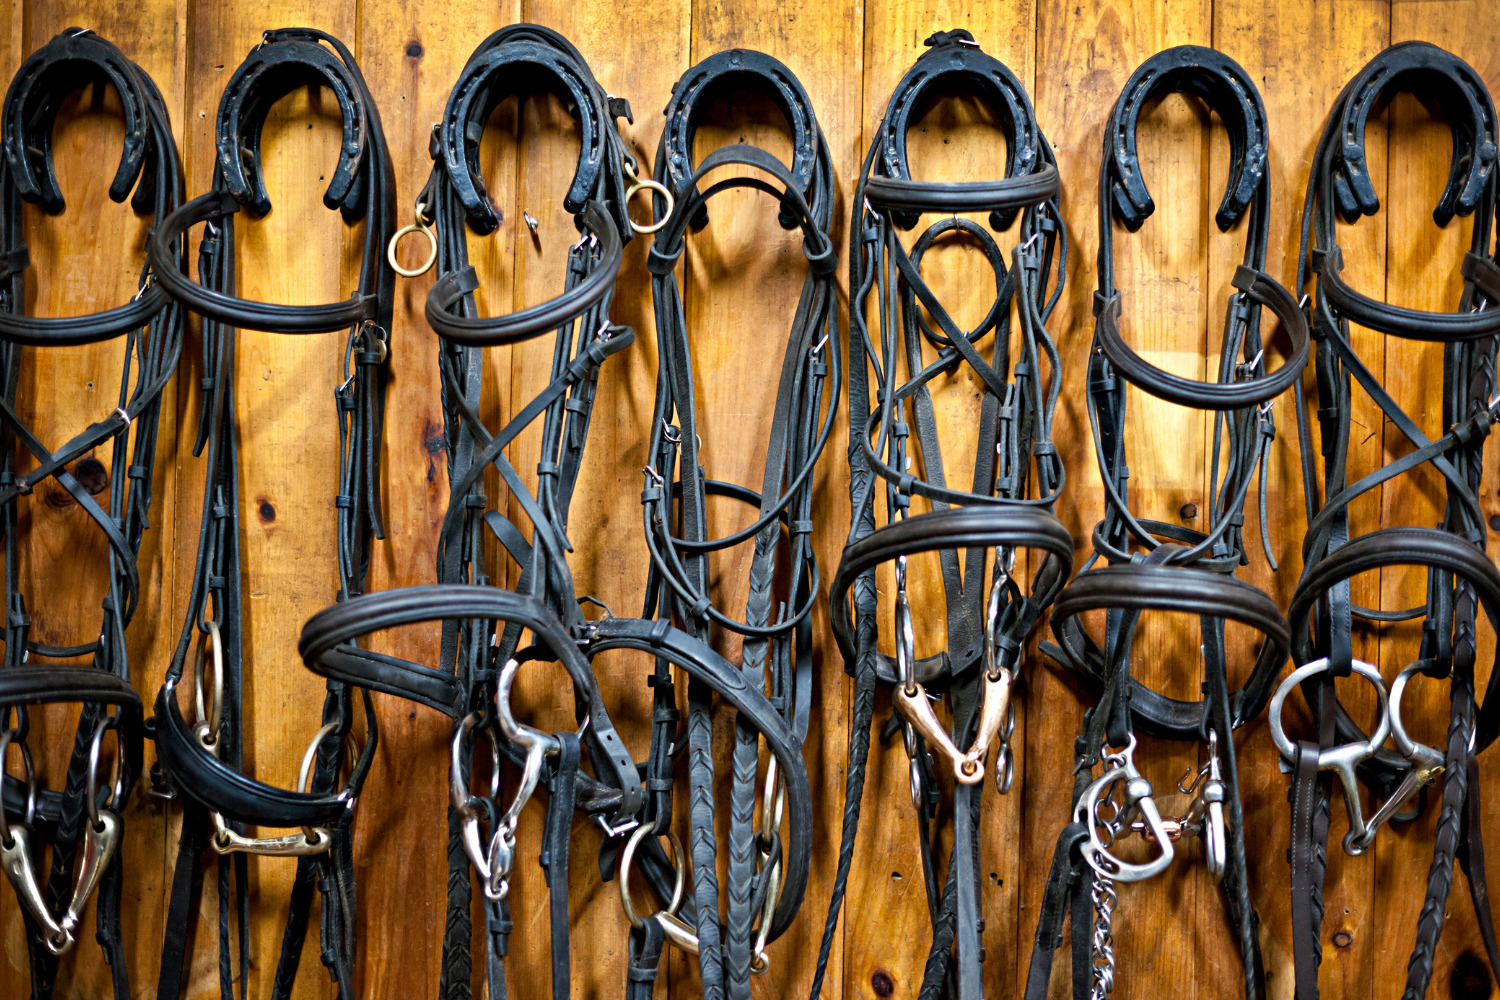 乗馬用品店レクシア | 高所得者層の習い事に乗馬をおすすめする9つの理由